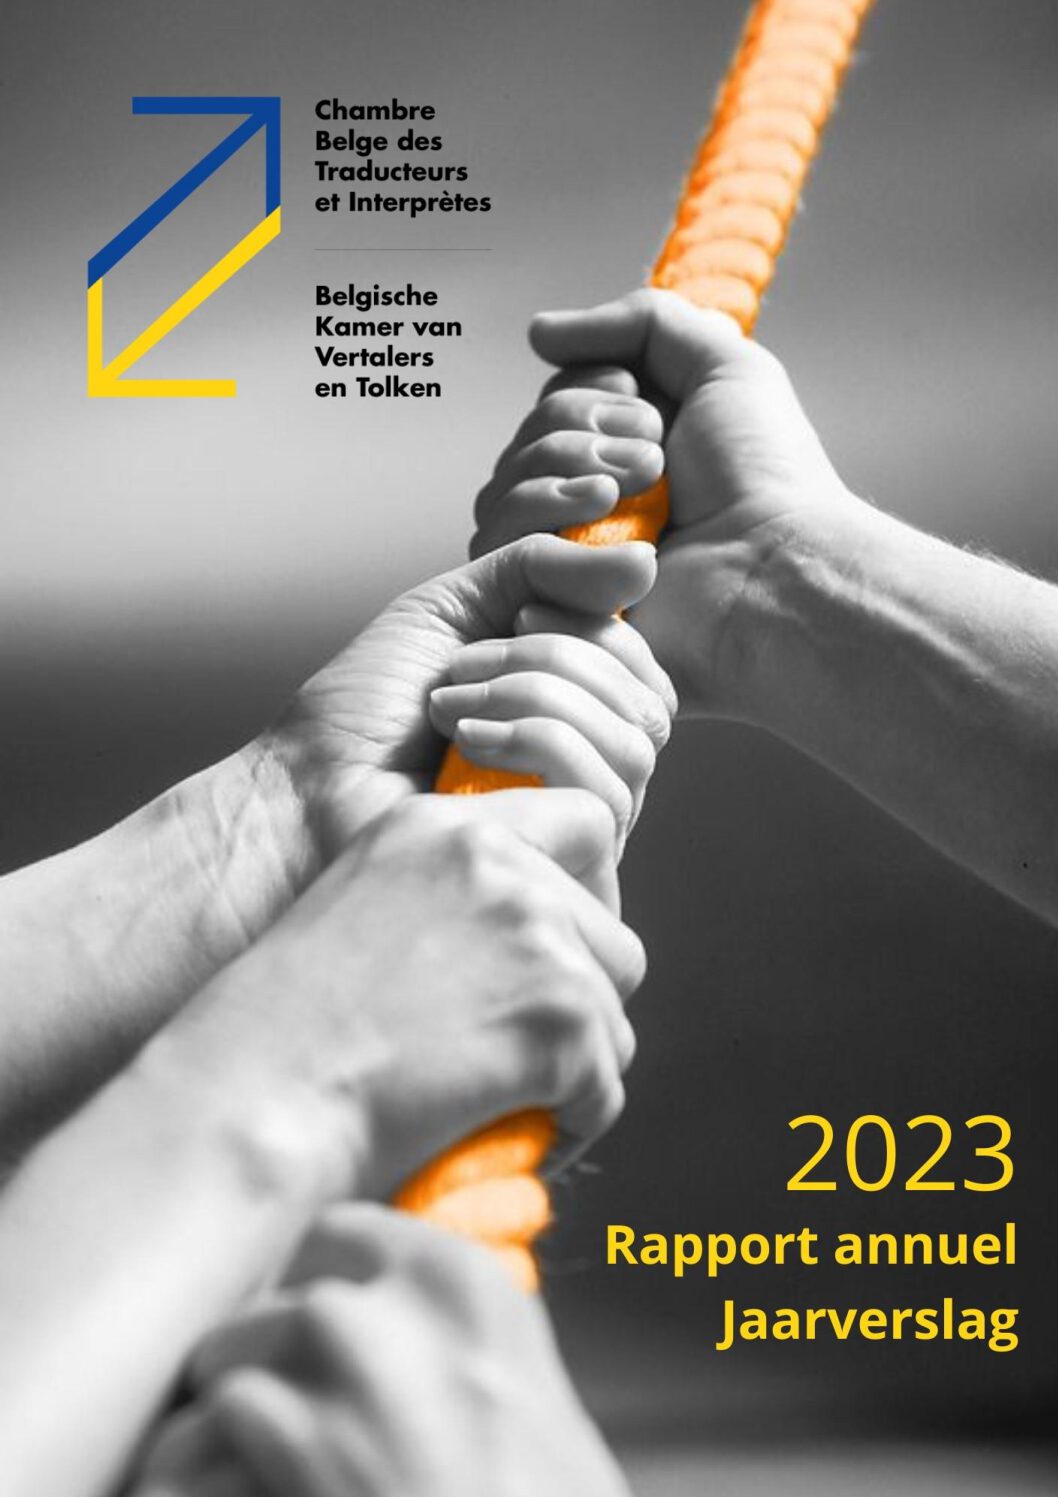 Image de présentation pour le document : Rapport annuel 2023 de la CBTI